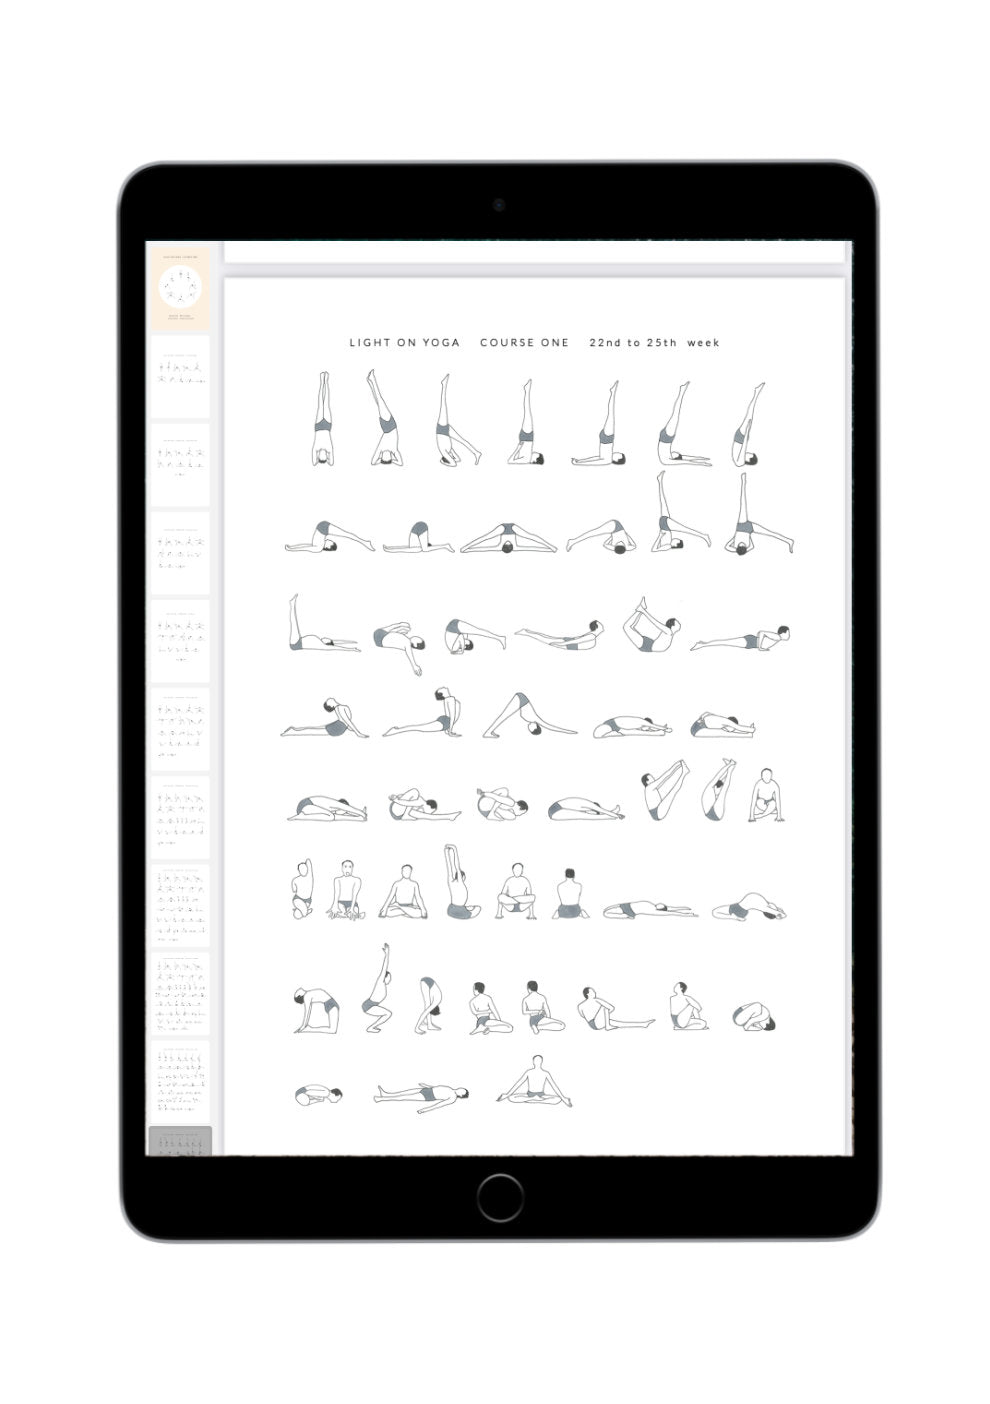 Svejar Yoga Illustrations - Light on Yoga Course 1 - Mockup iPad